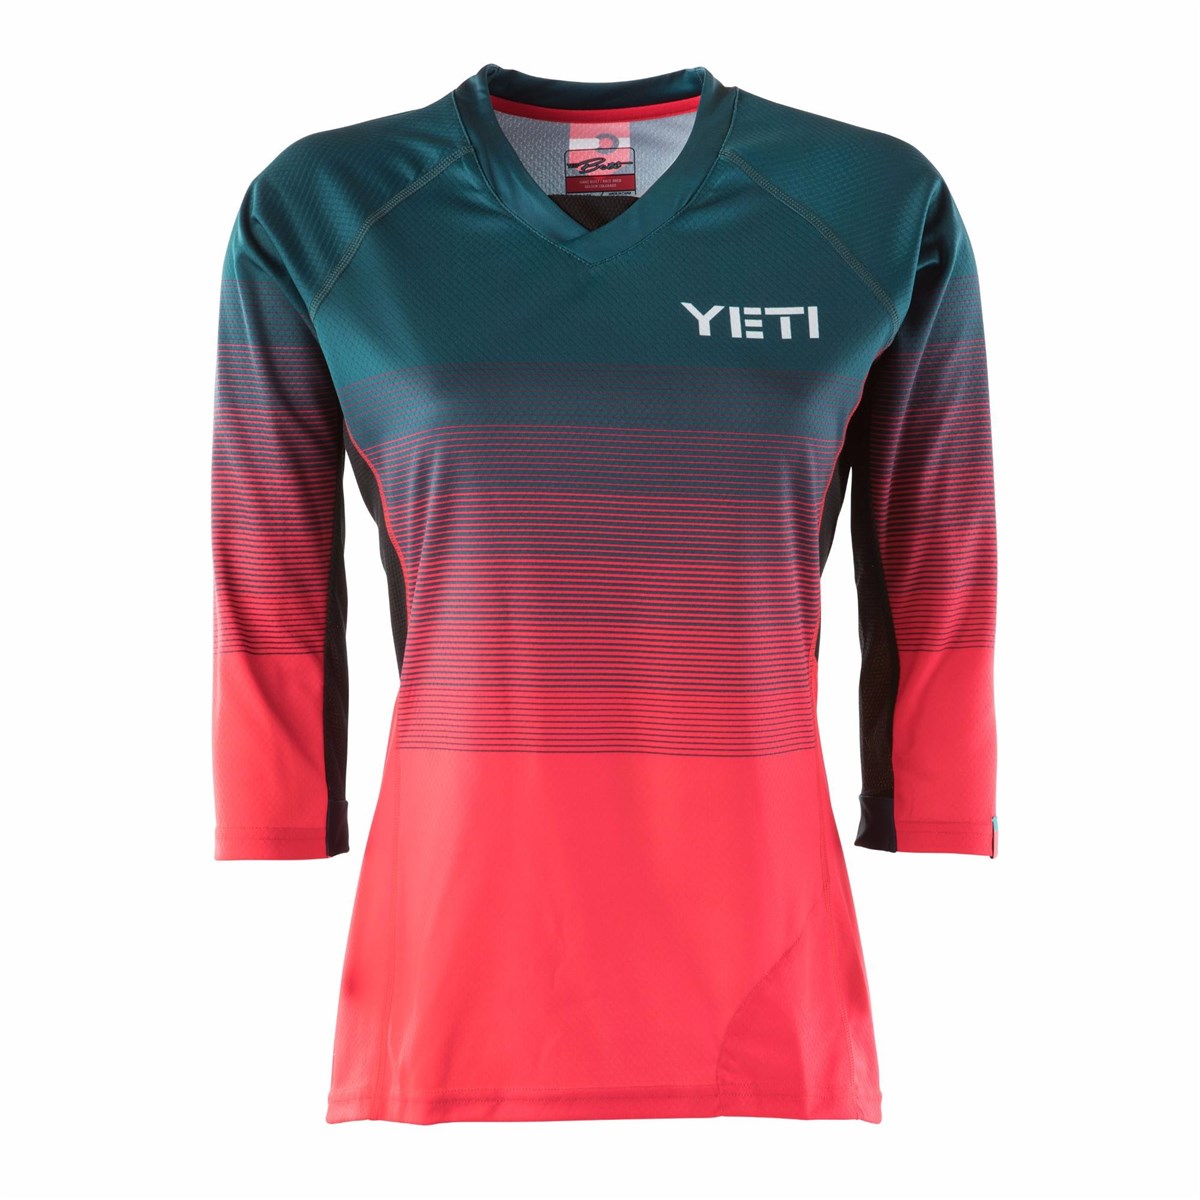 Yeti Enduro Womens Short Sleeve Jersey product image